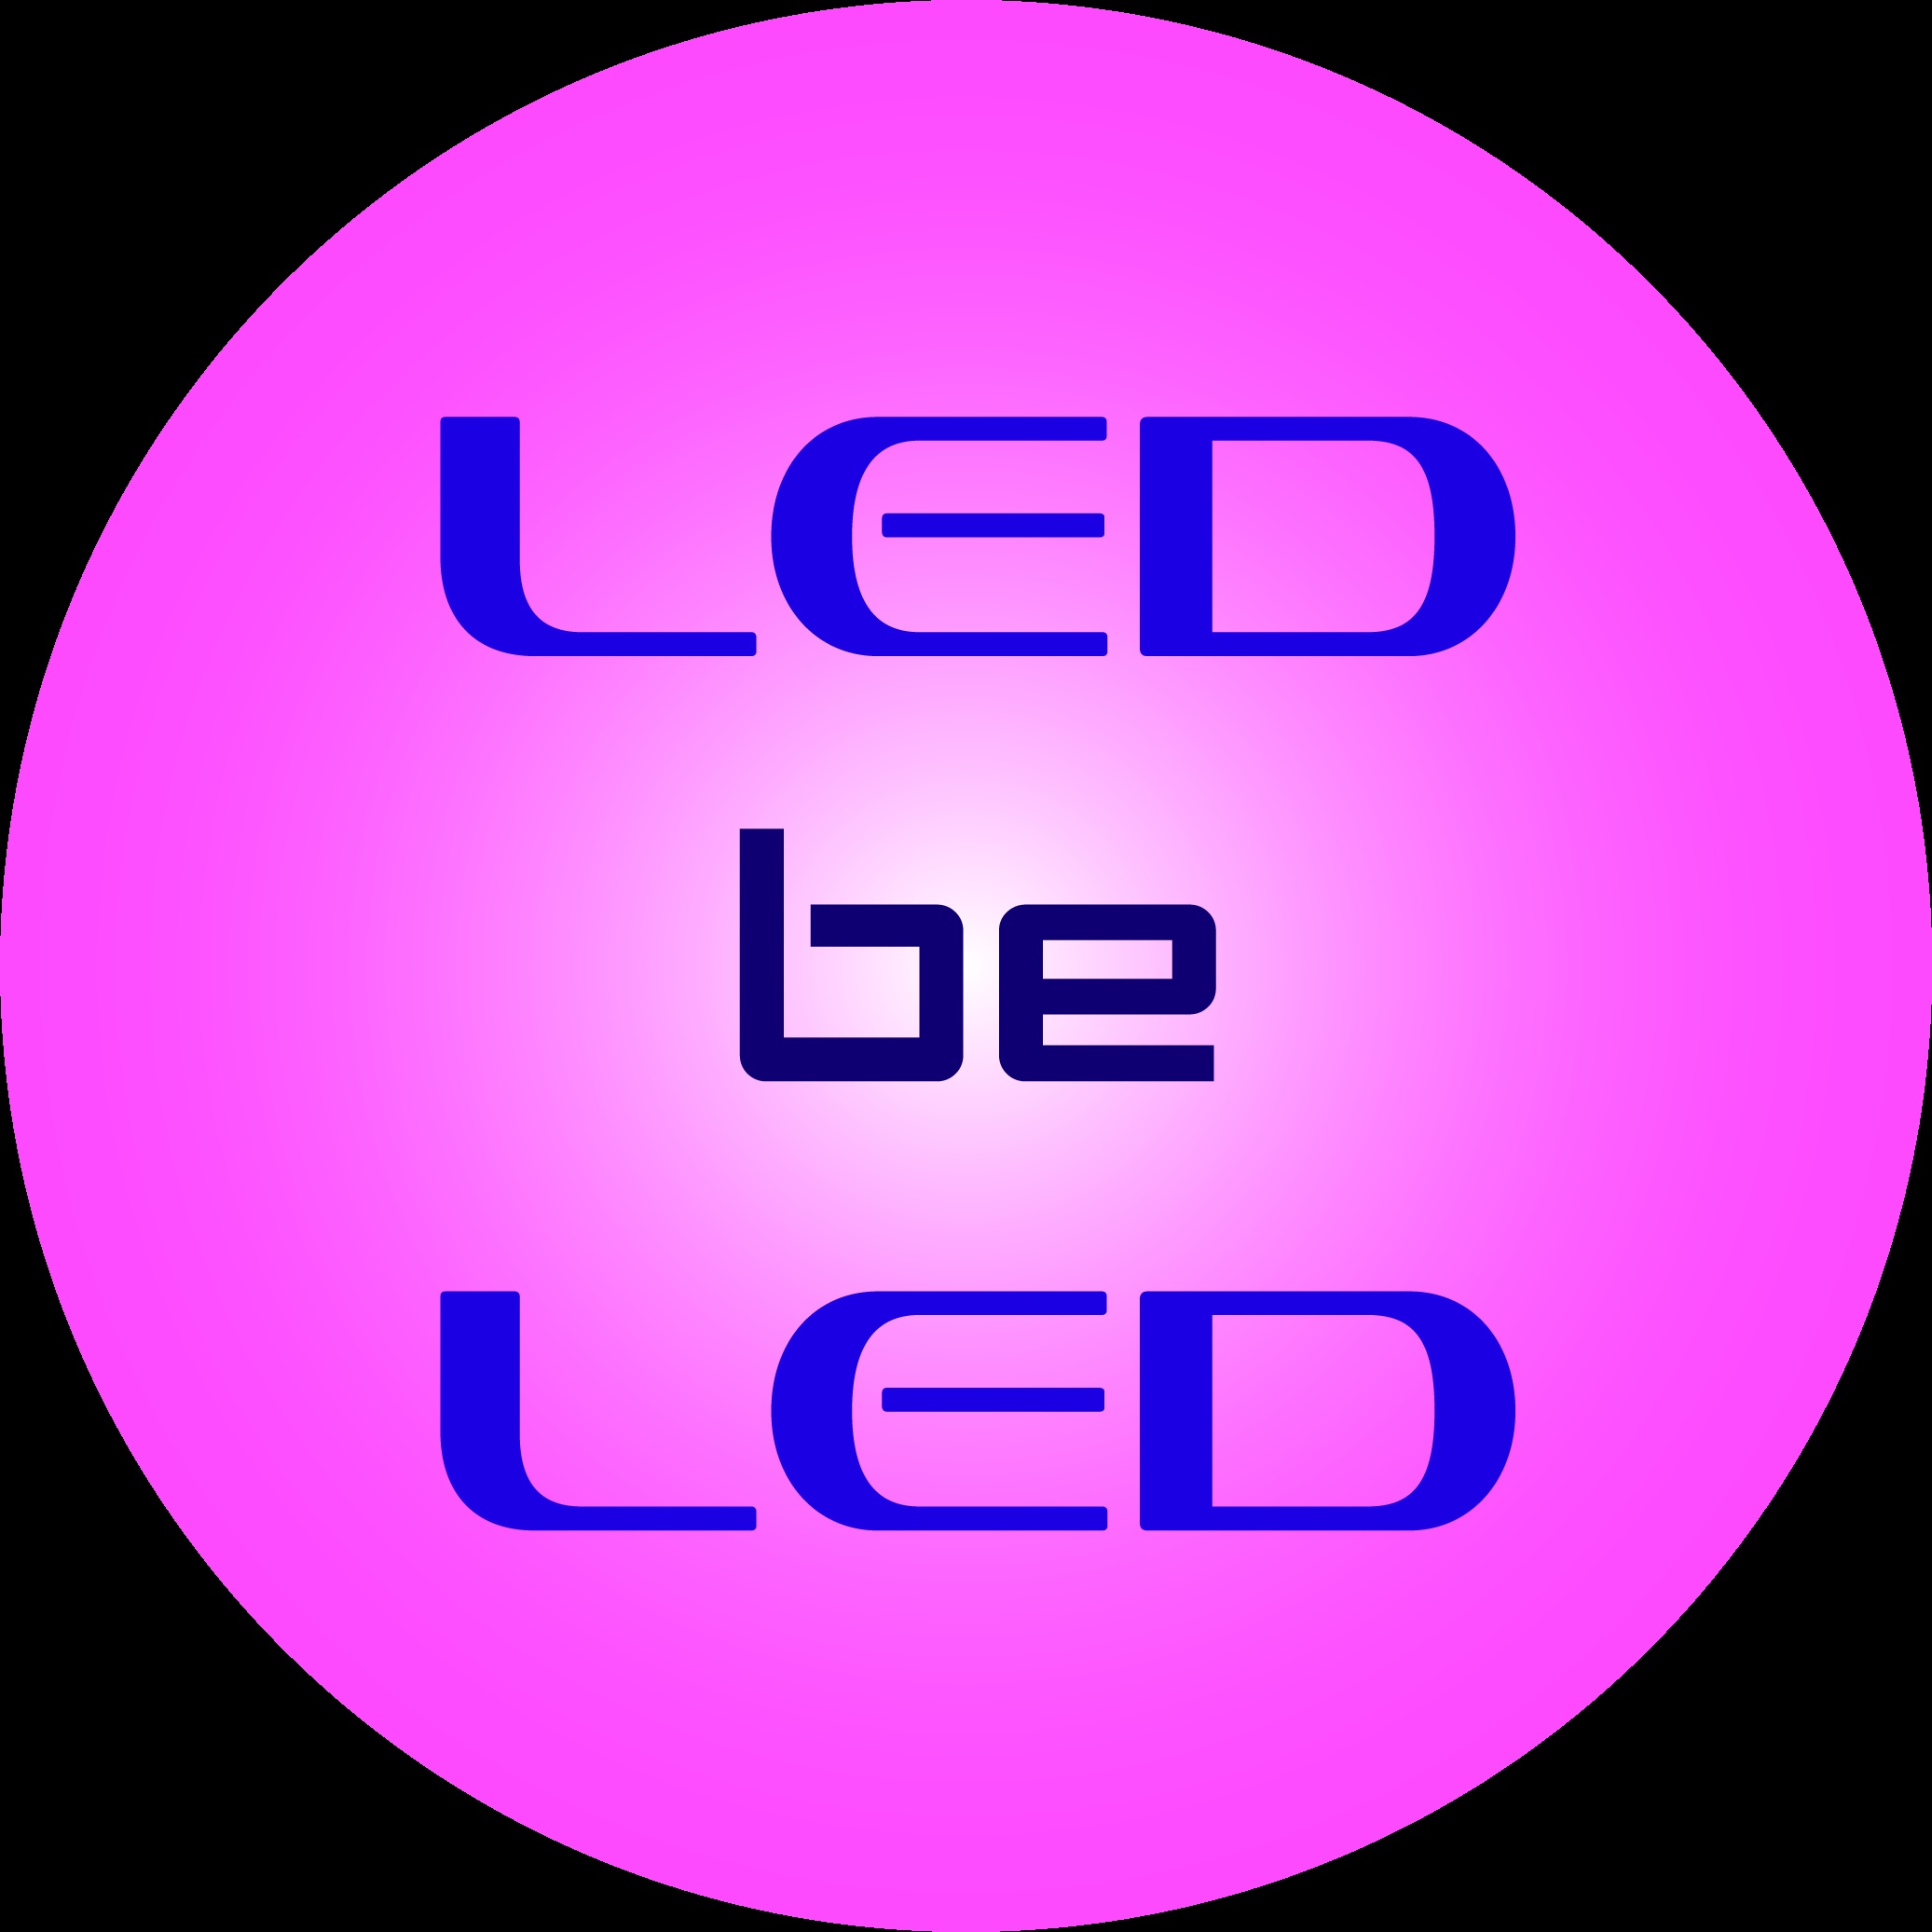 LED be LED